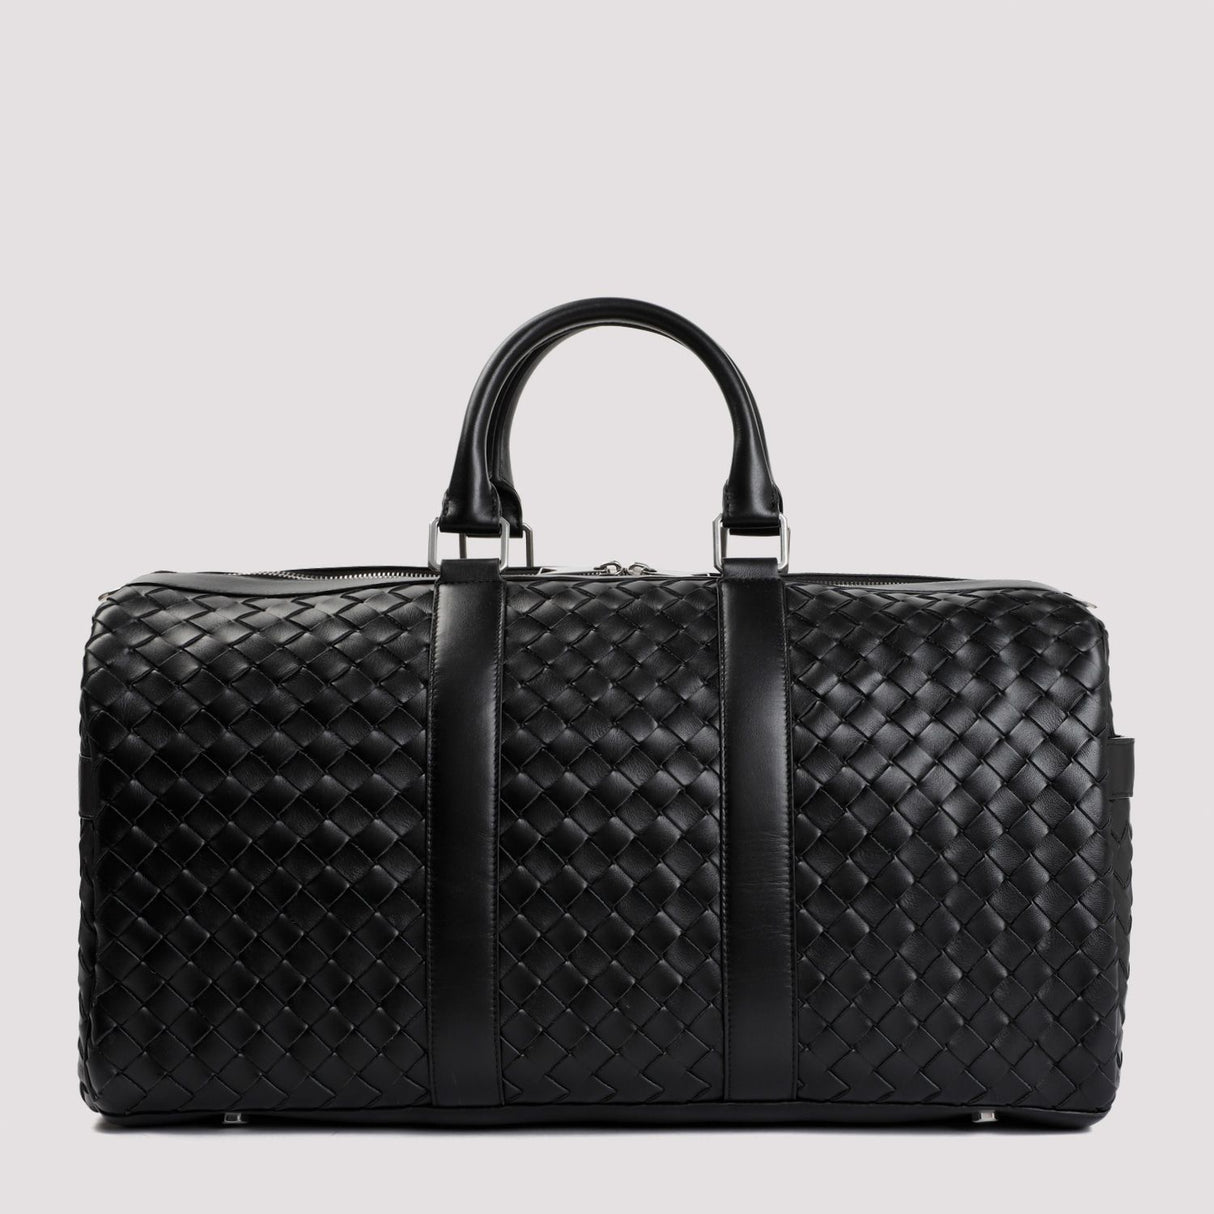 حقيبة يد كلاسيكية من نوع دافل - أسود